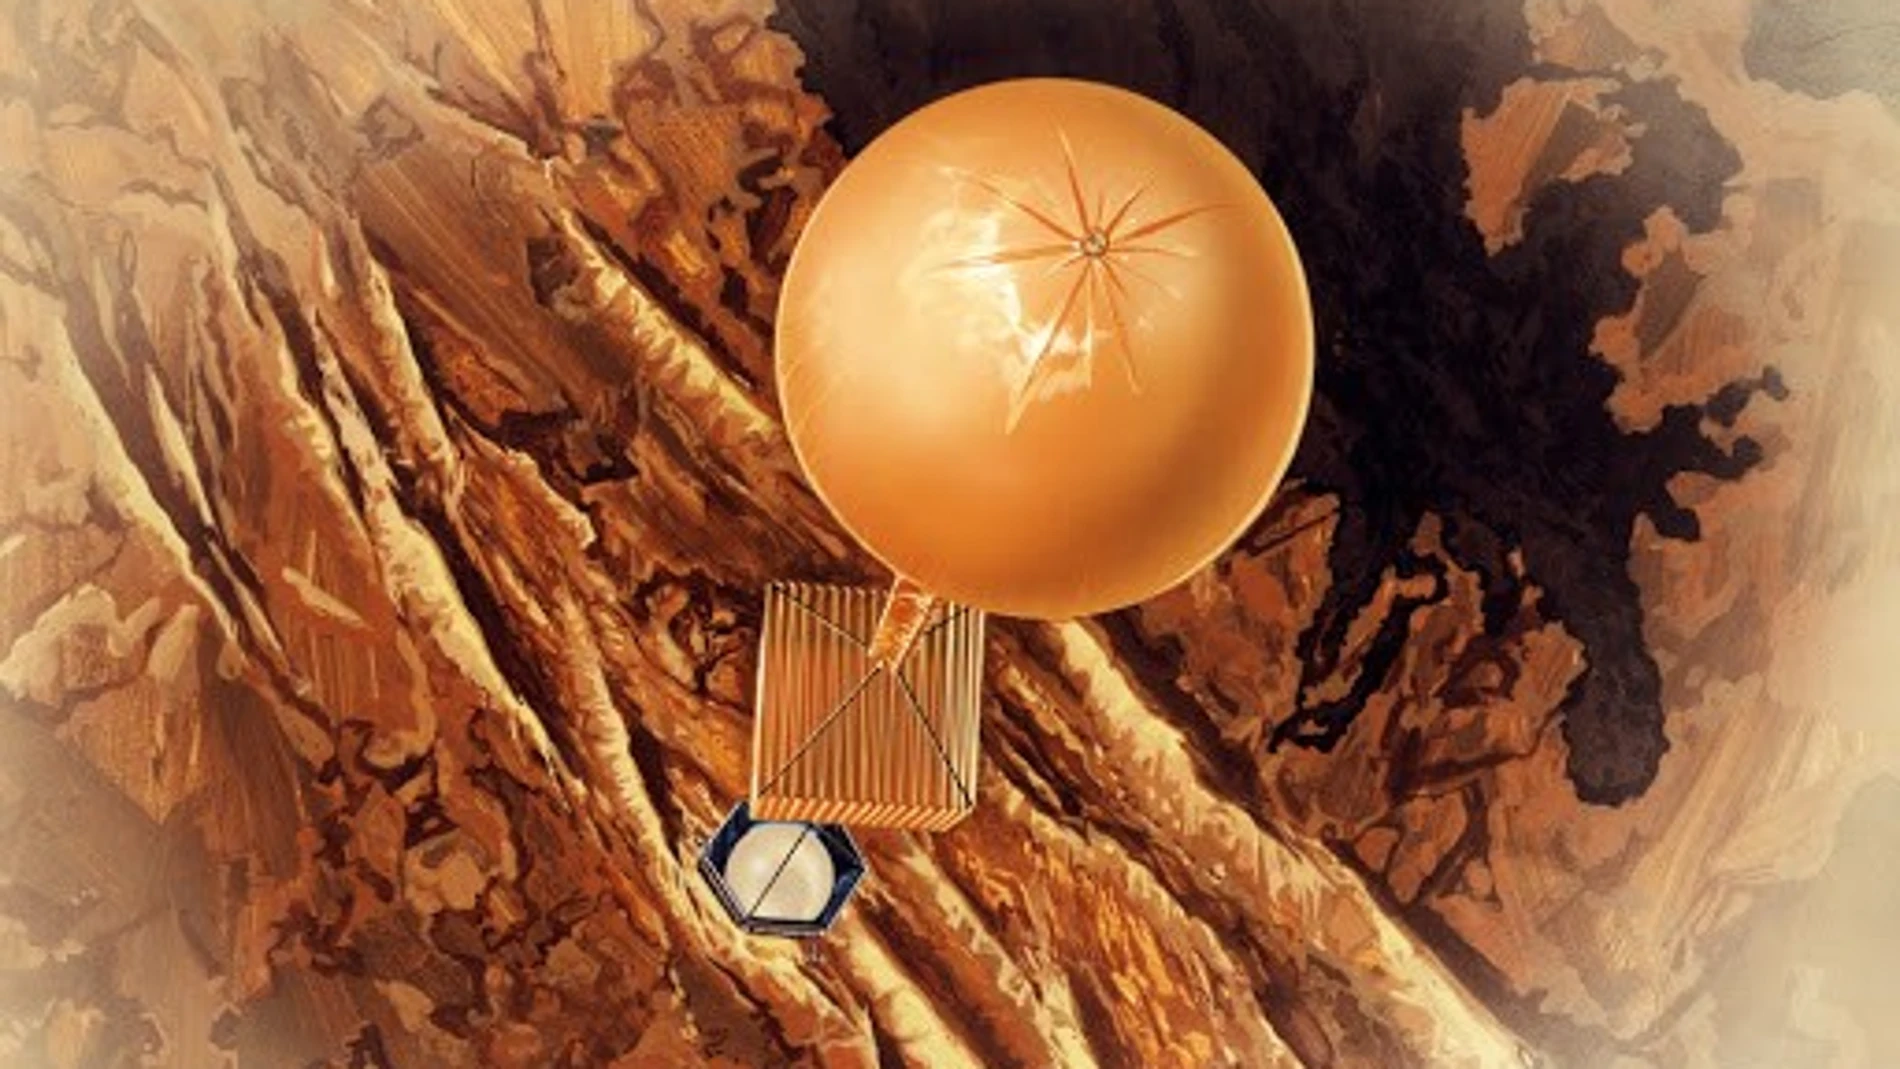 Representación artística de uno de los globos que volaron en Venus como parte de la misión soviética Vega, en 1985